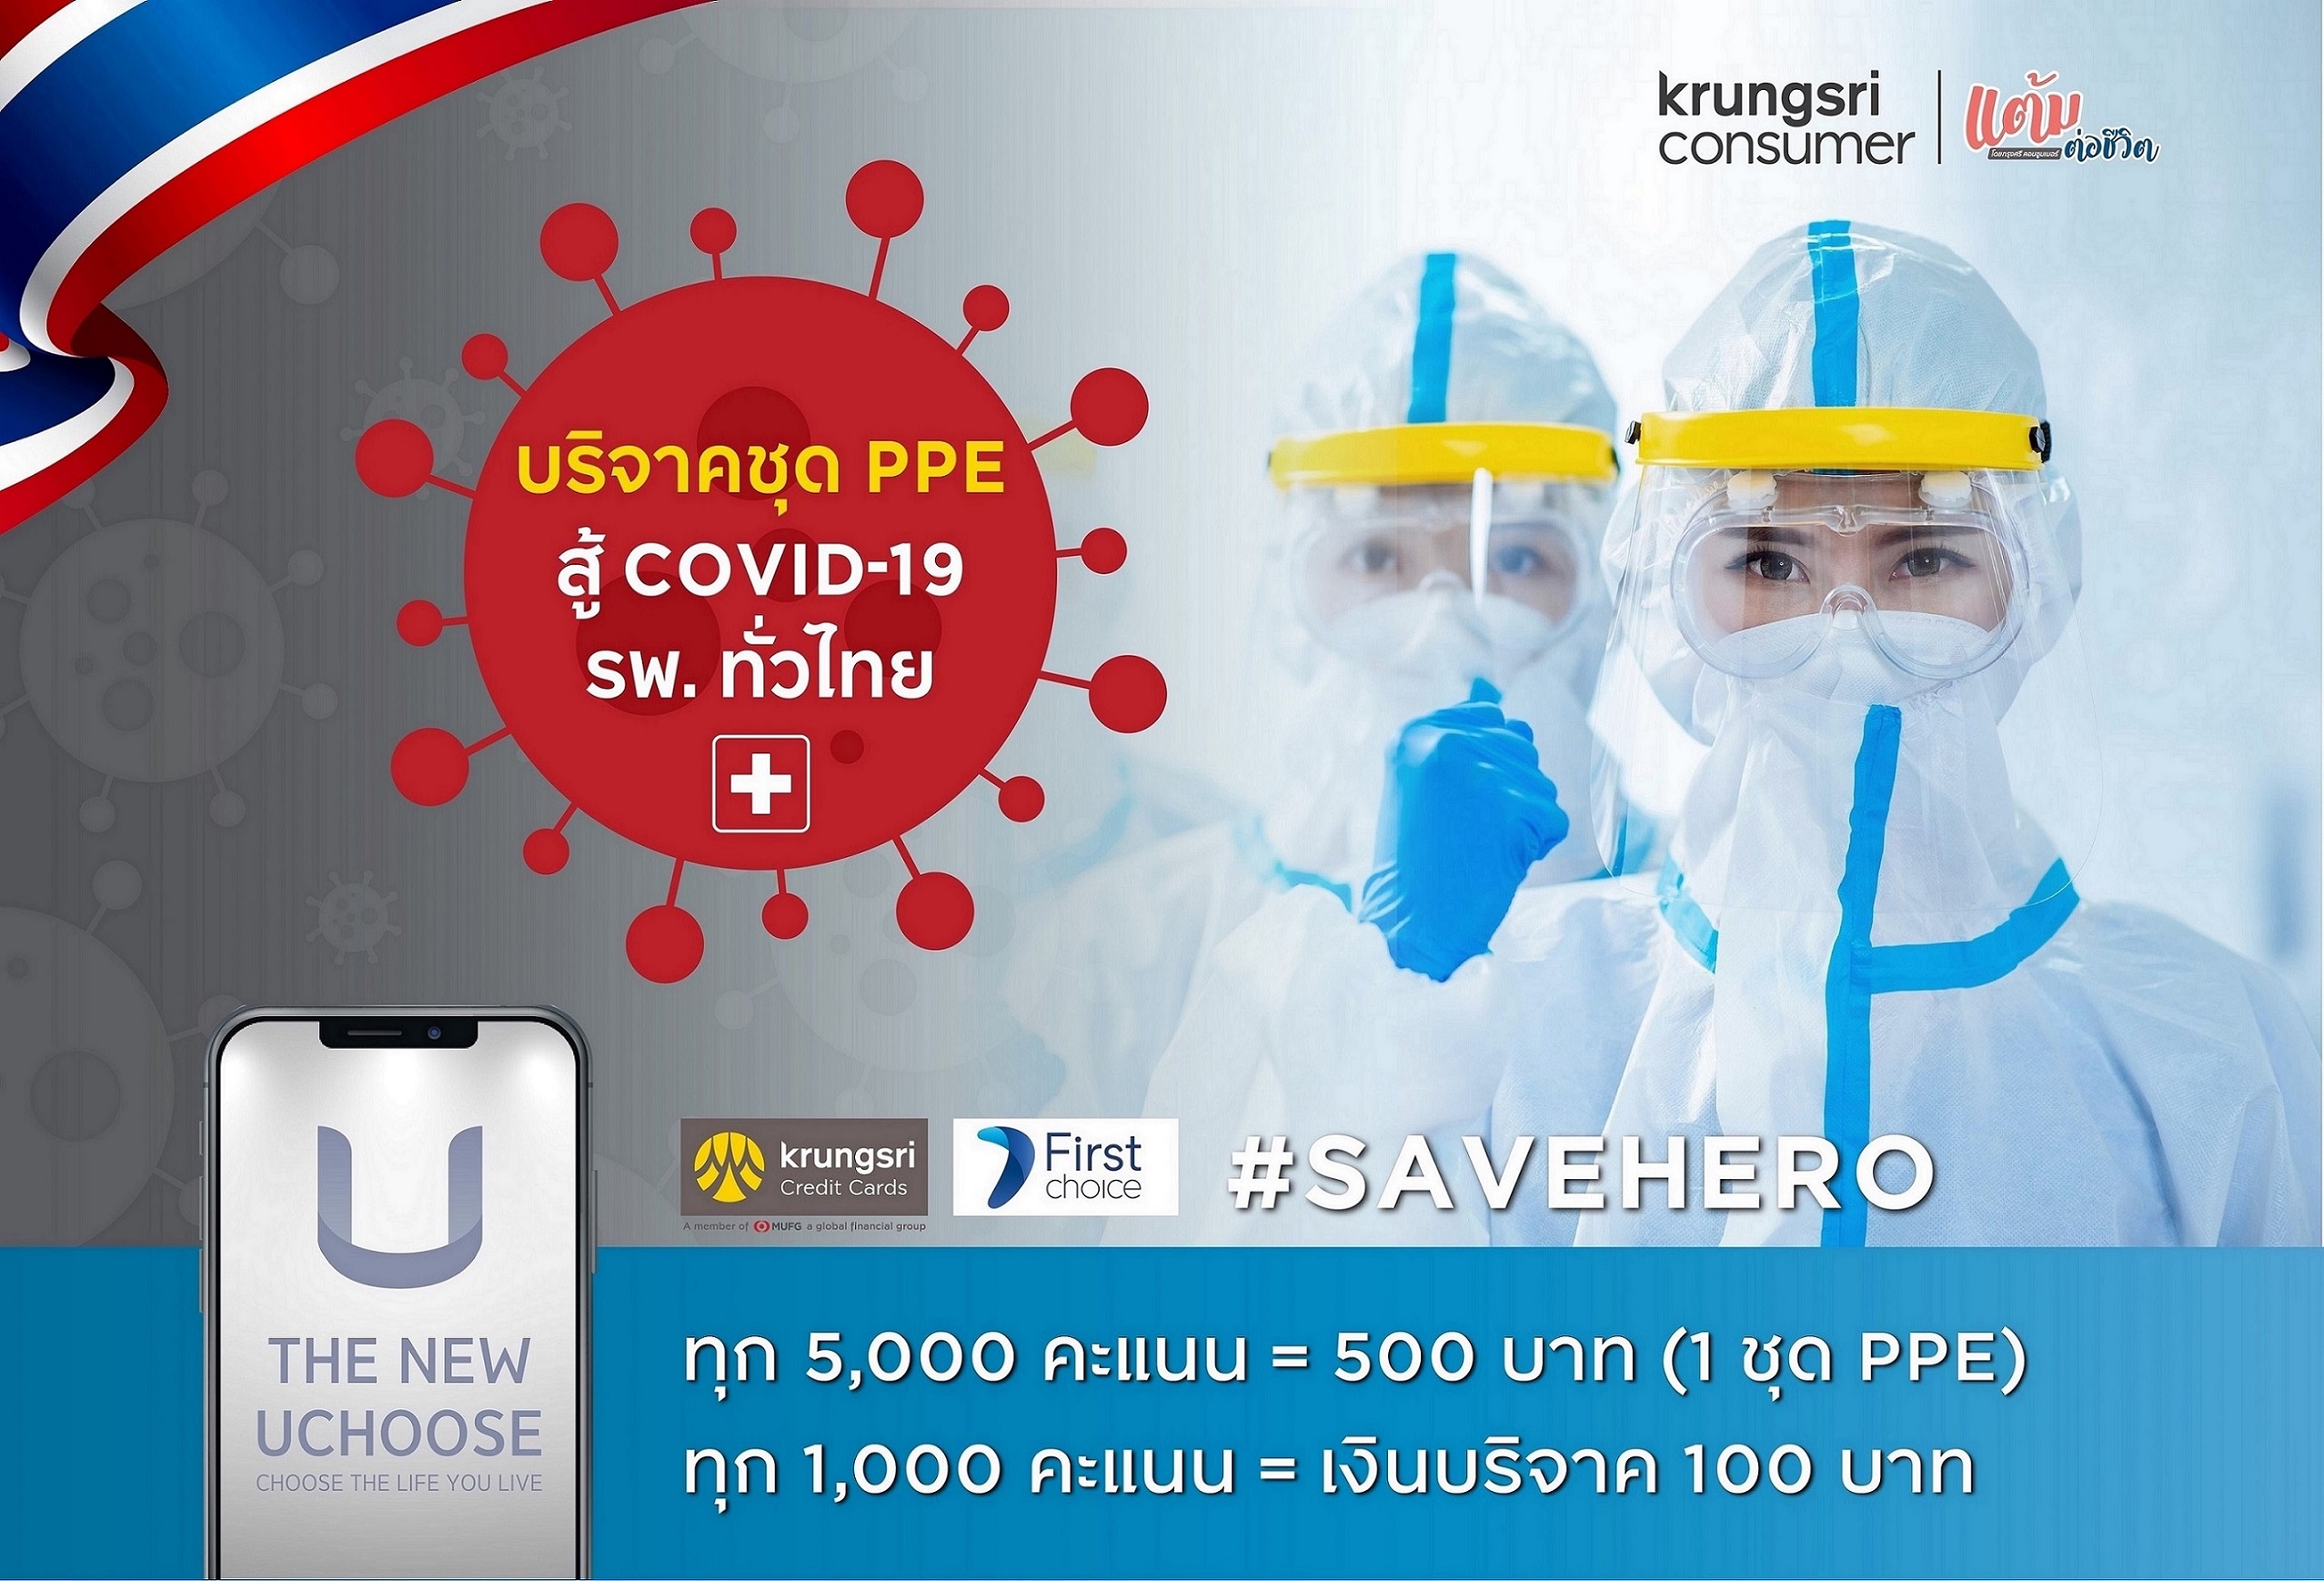 กรุงศรี คอนซูมเมอร์ เดินหน้า โครงการแต้มต่อชีวิต ชวนแลกแต้มบัตรเครดิตบริจาคชุด PPE มอบโรงพยาบาลทั่วไทยสู้ภัย 'COVID-19